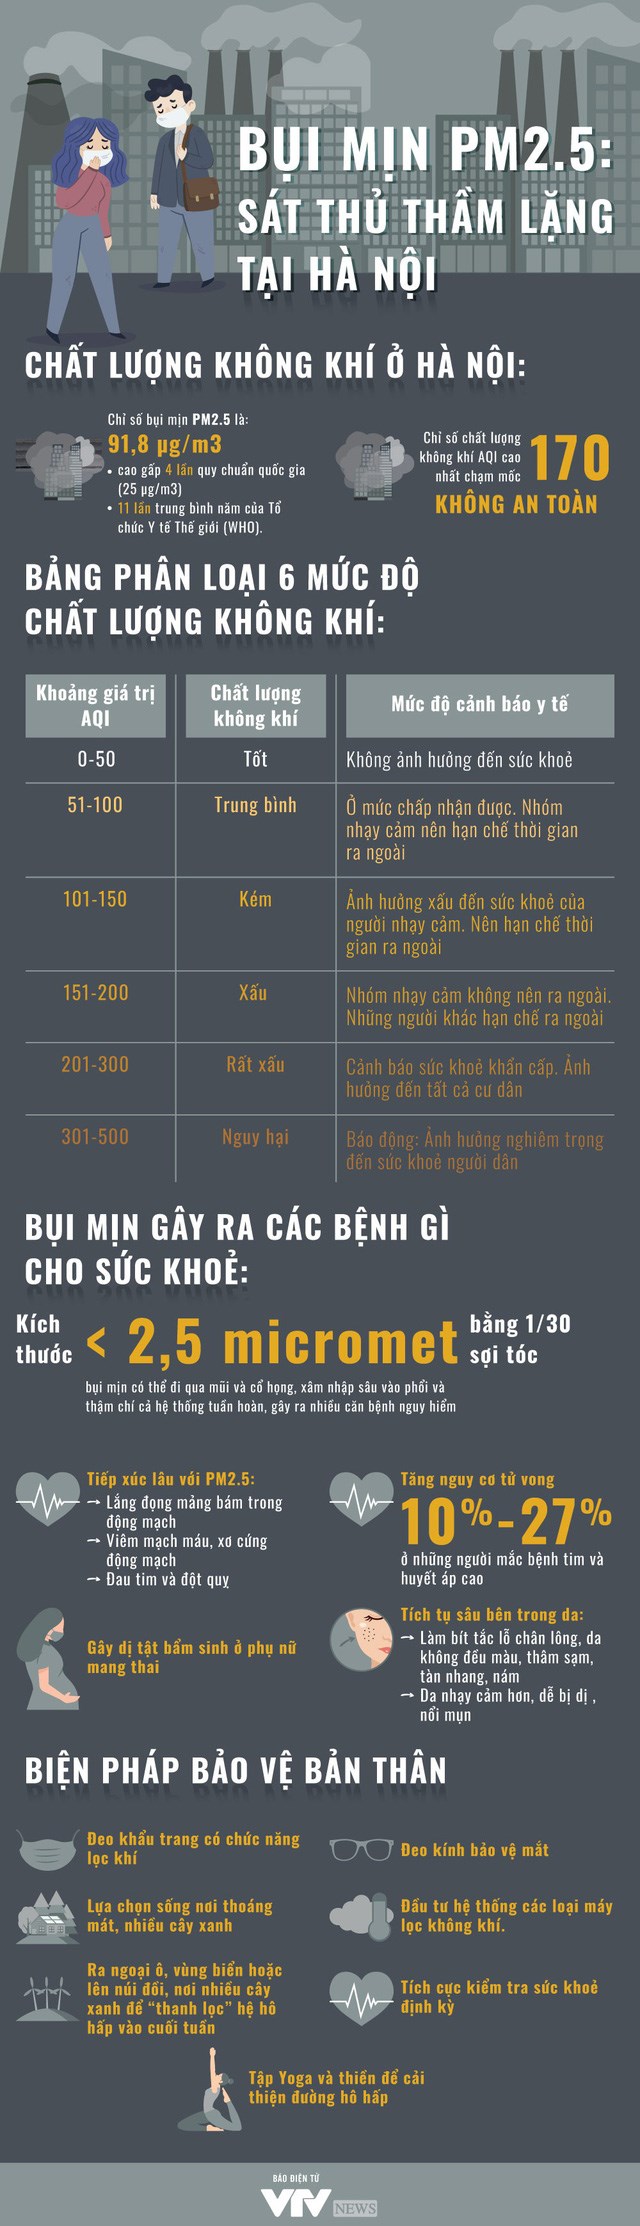 [Infographic] Bụi mịn PM 2.5 - "Sát thủ" thầm lặng tại Hà Nội - Ảnh 1